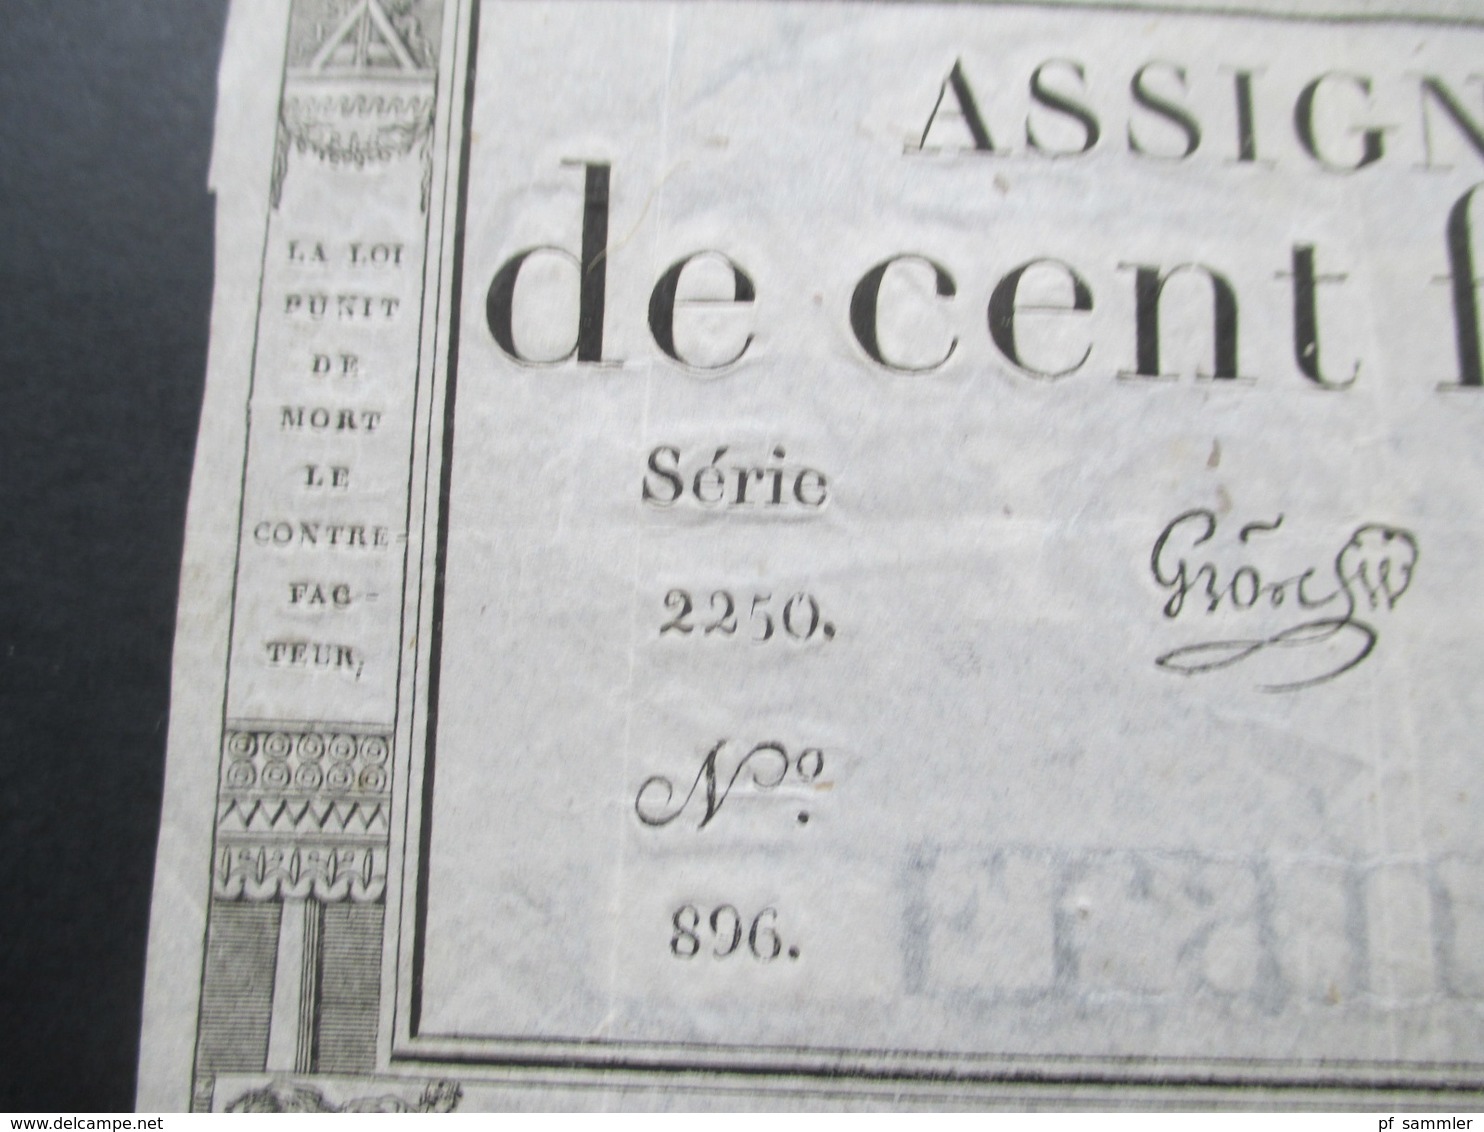 Frankreich Assignat De Cent Francs Serie 2250 No 896. Cree Le 18 Nivose L'an 3e Republique Francaise - ...-1889 Francs Im 19. Jh.